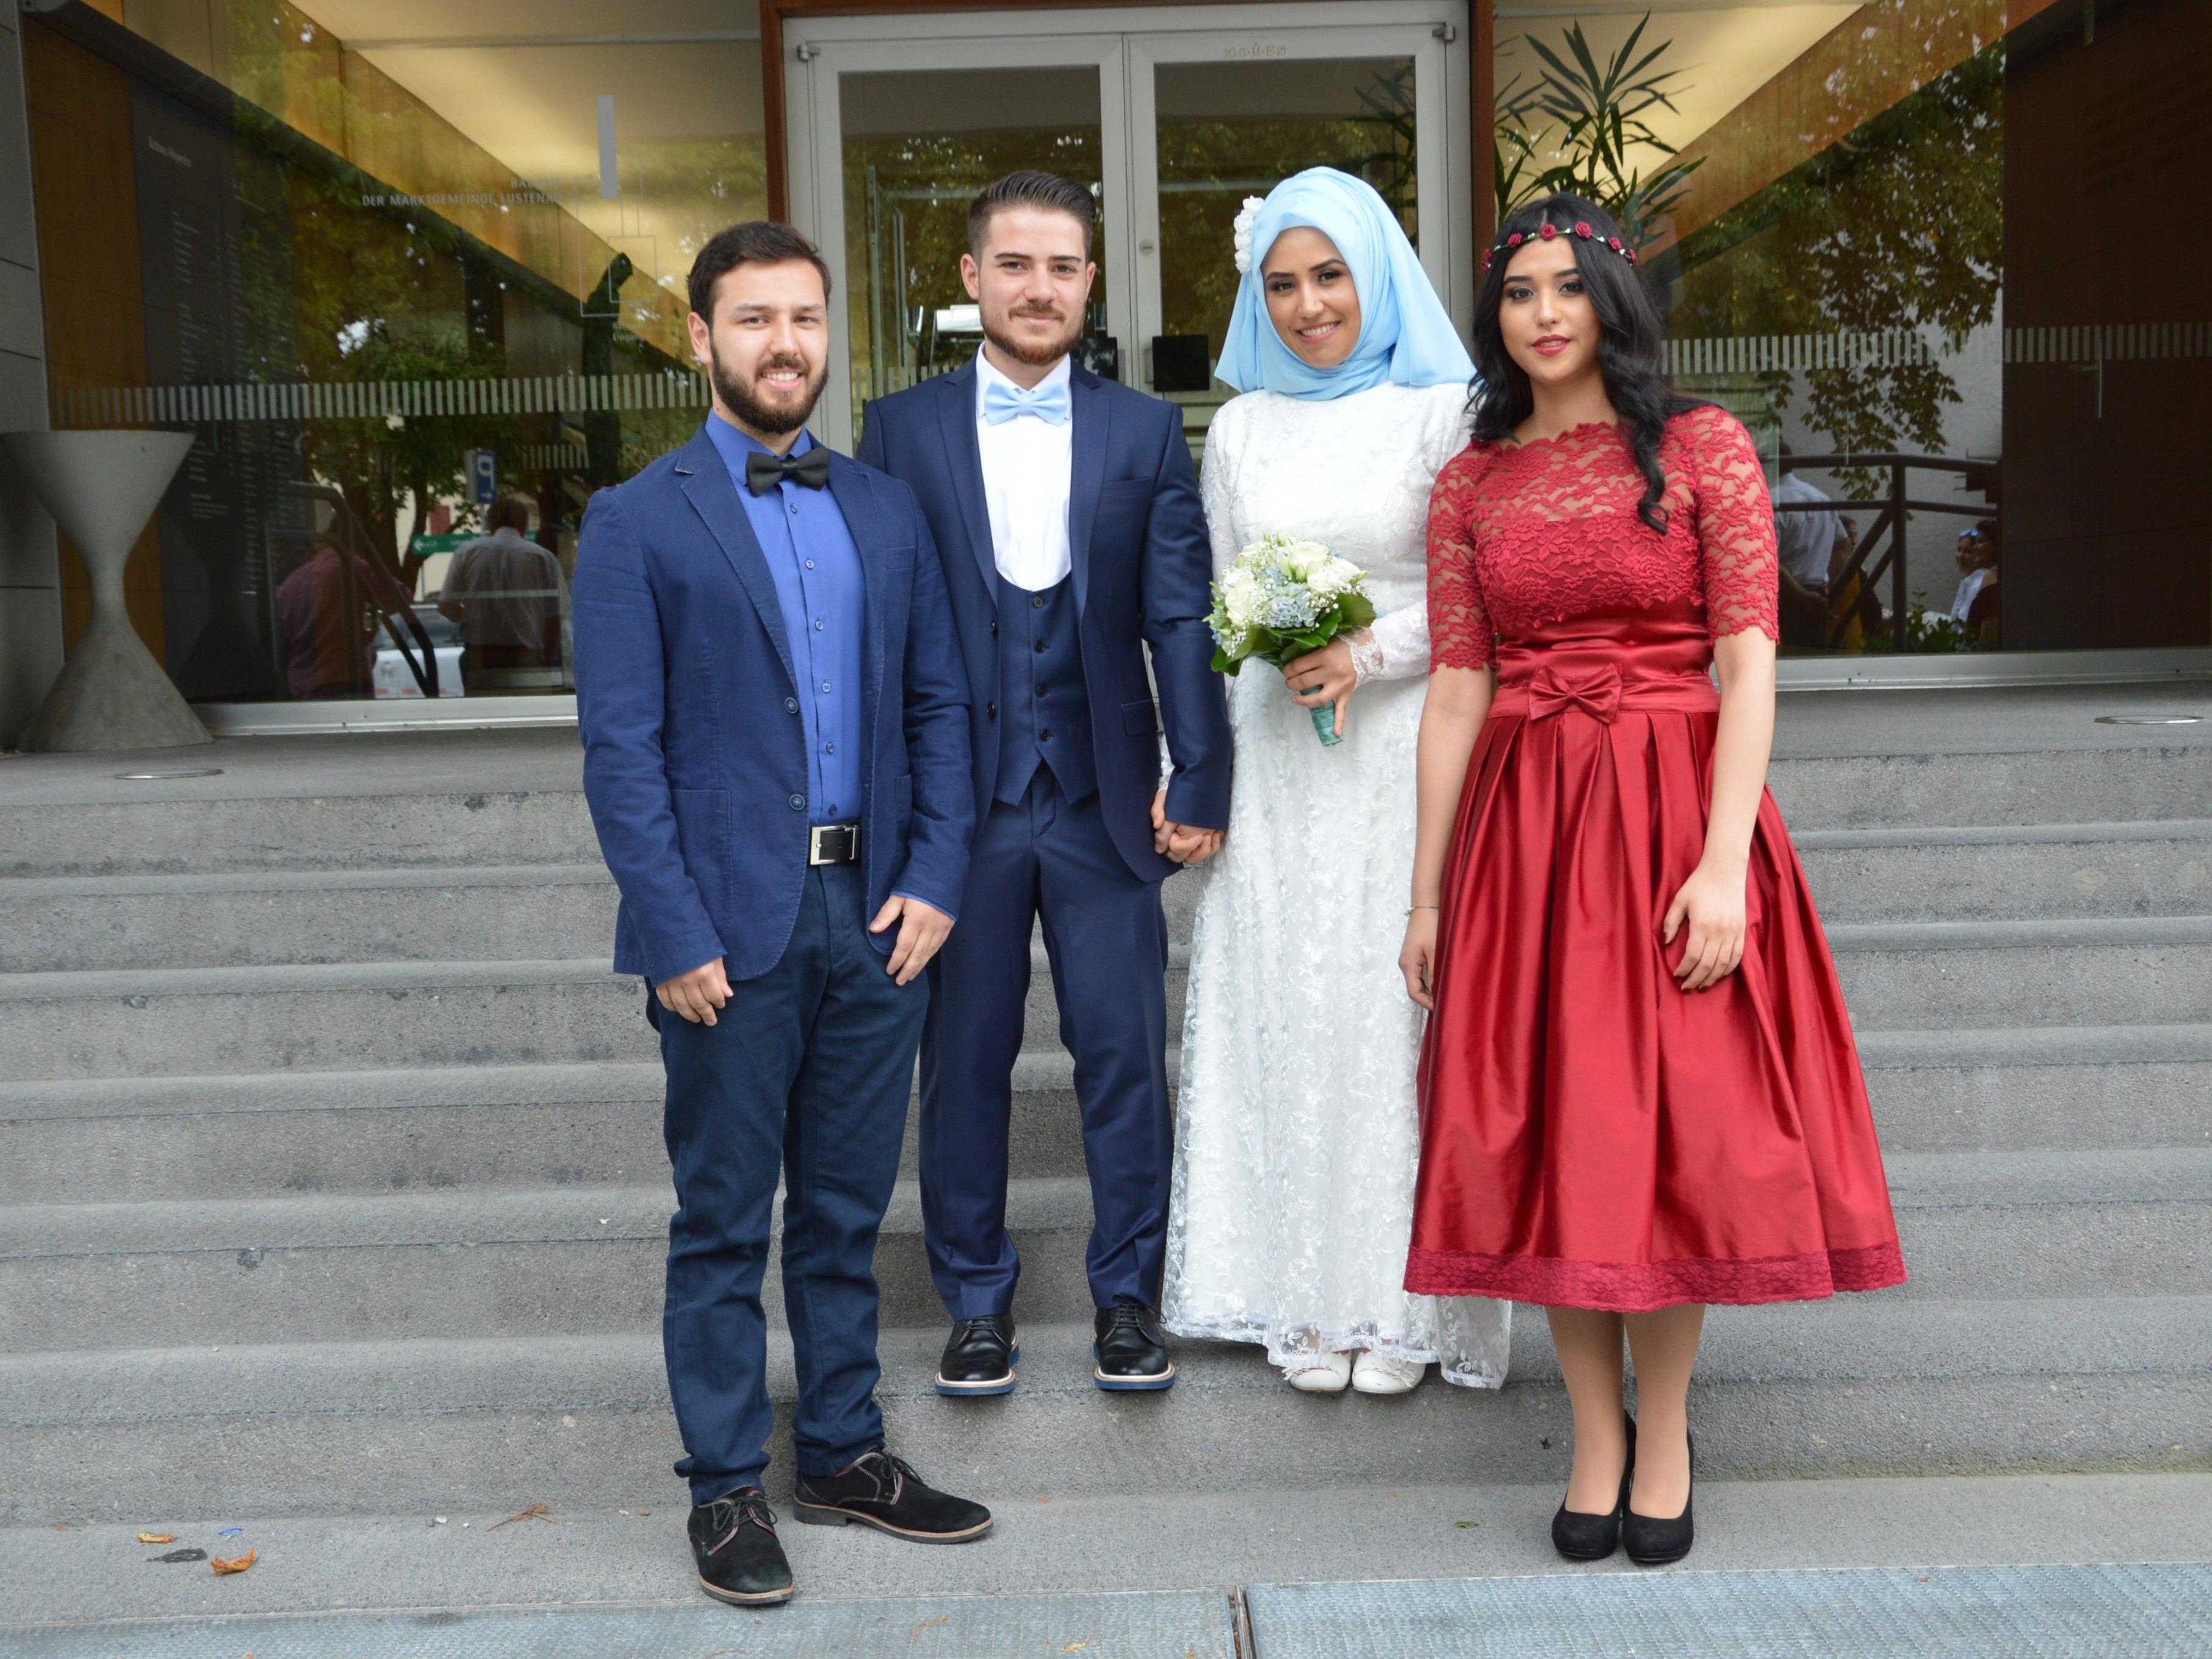 Hatice Öcal und Hüsyin Kanyilmaz haben geheiratet.